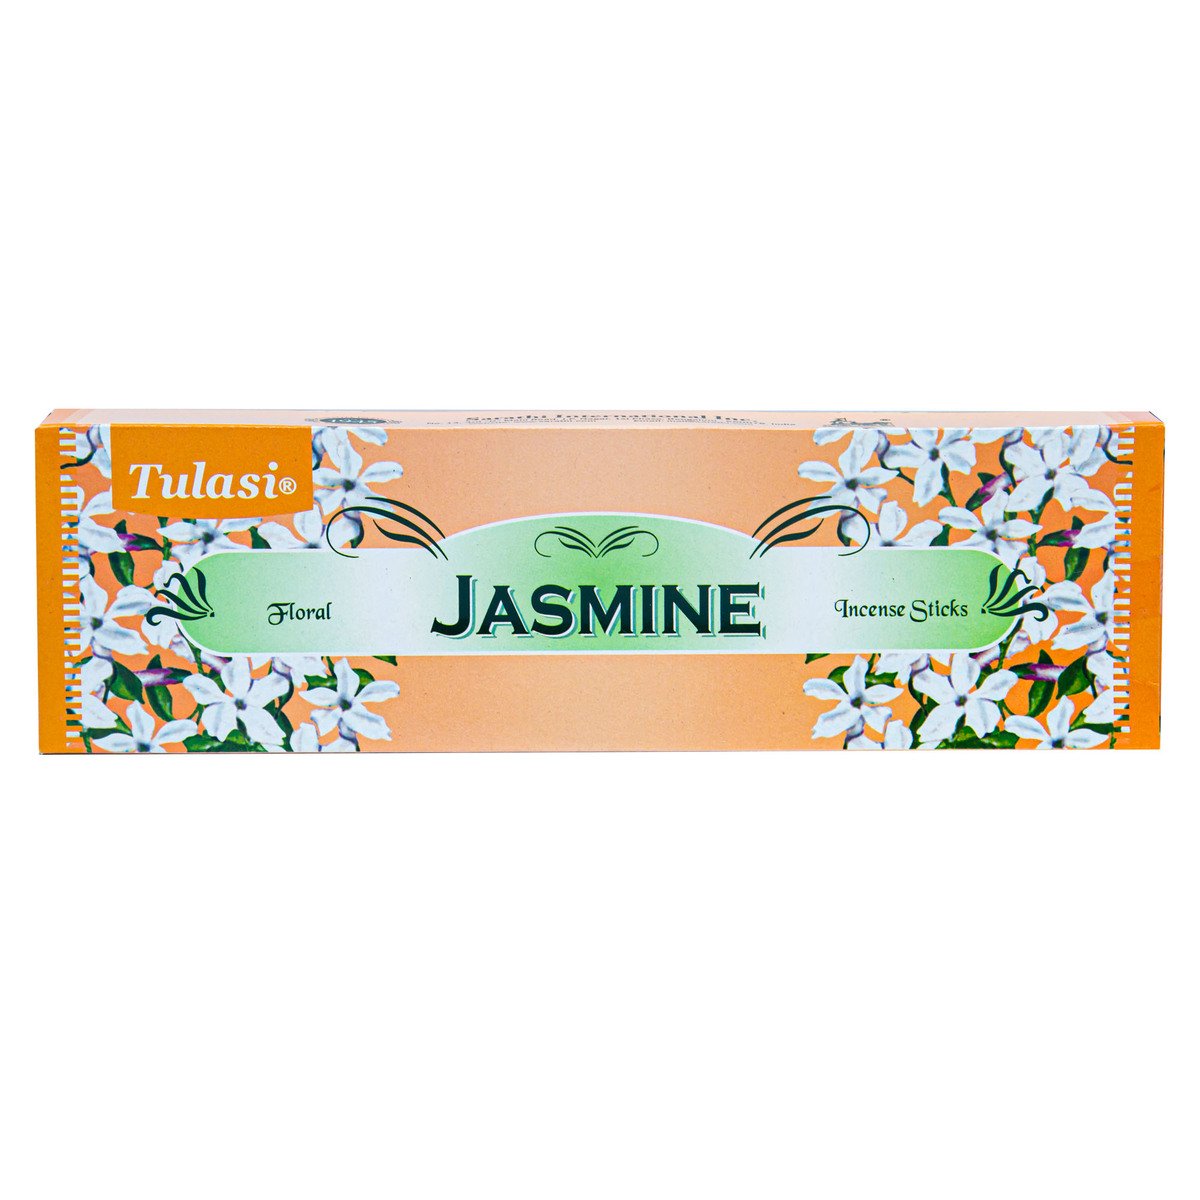 Tulasi Jasmine Incense Sticks 1pkt